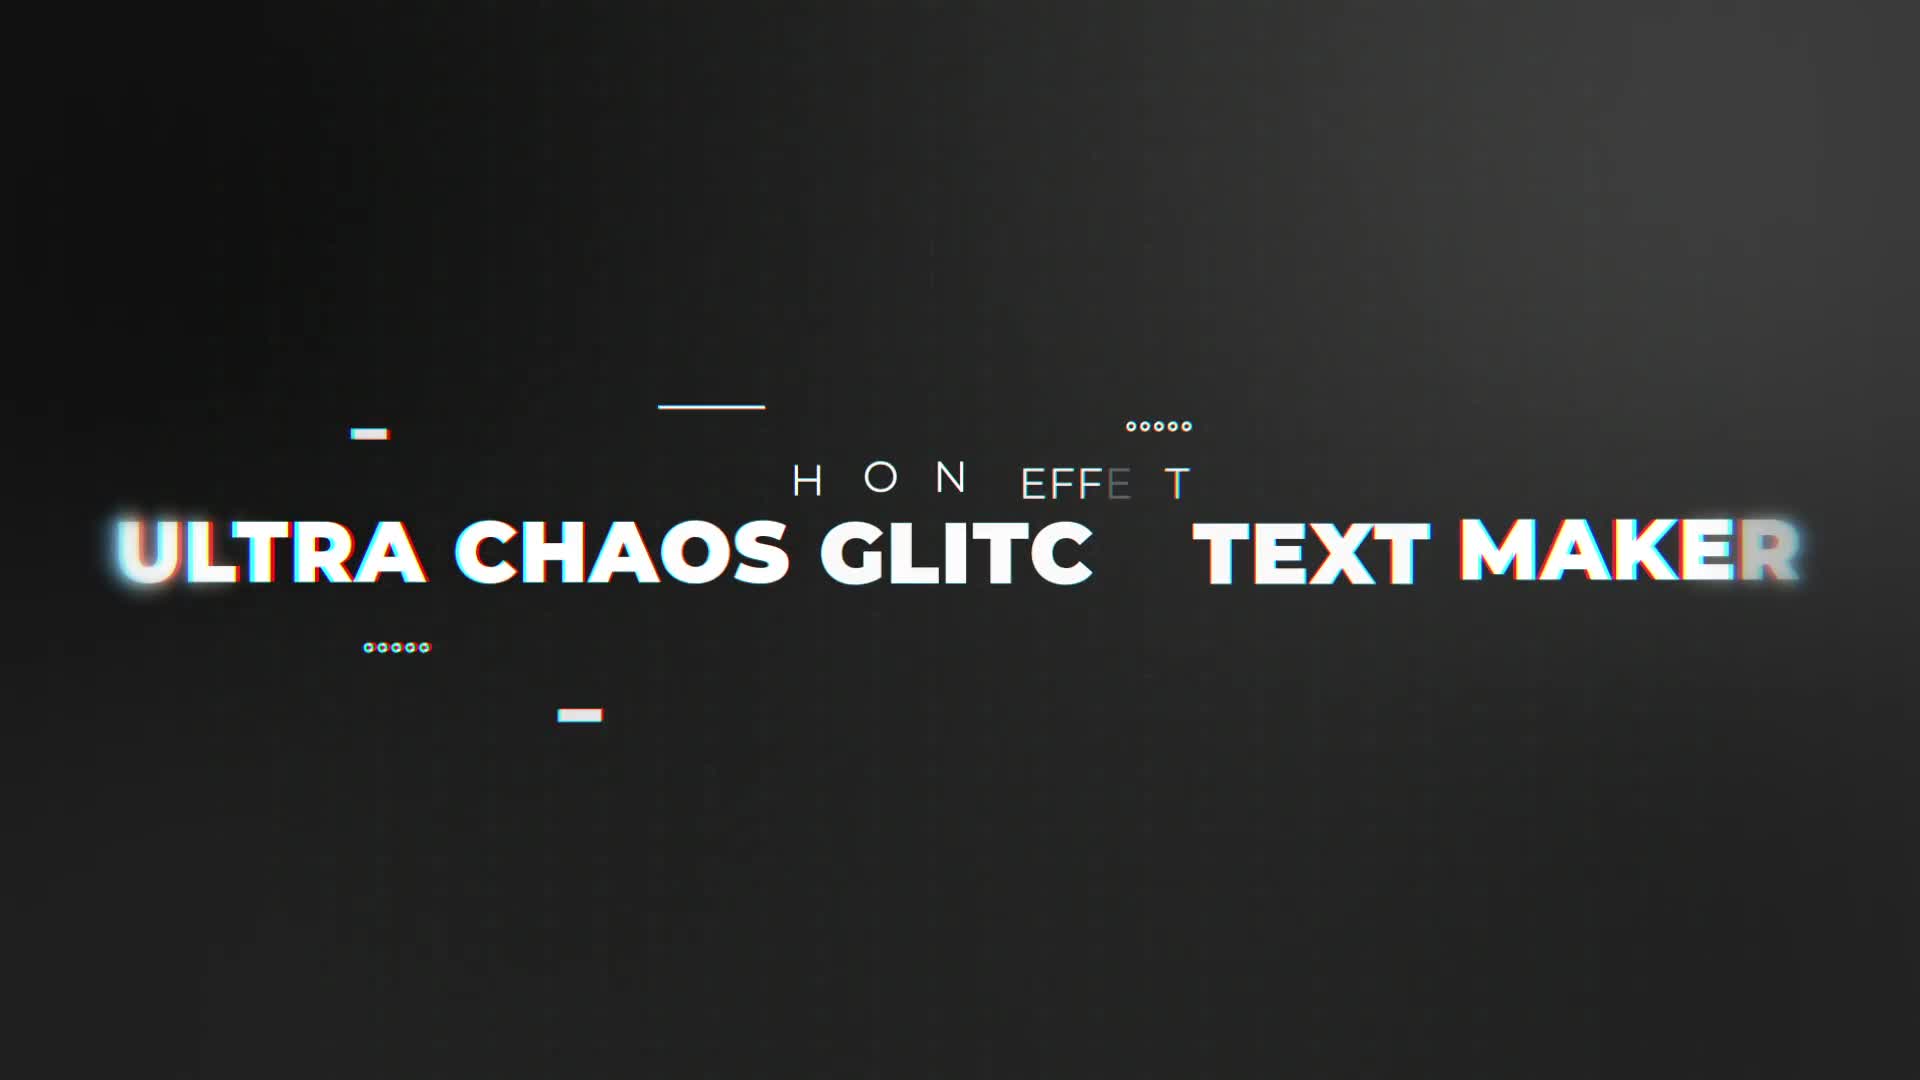 Ultra Chaos Glitch Text Maker | Premiere Pro Videohive 31773882 Premiere Pro Image 12